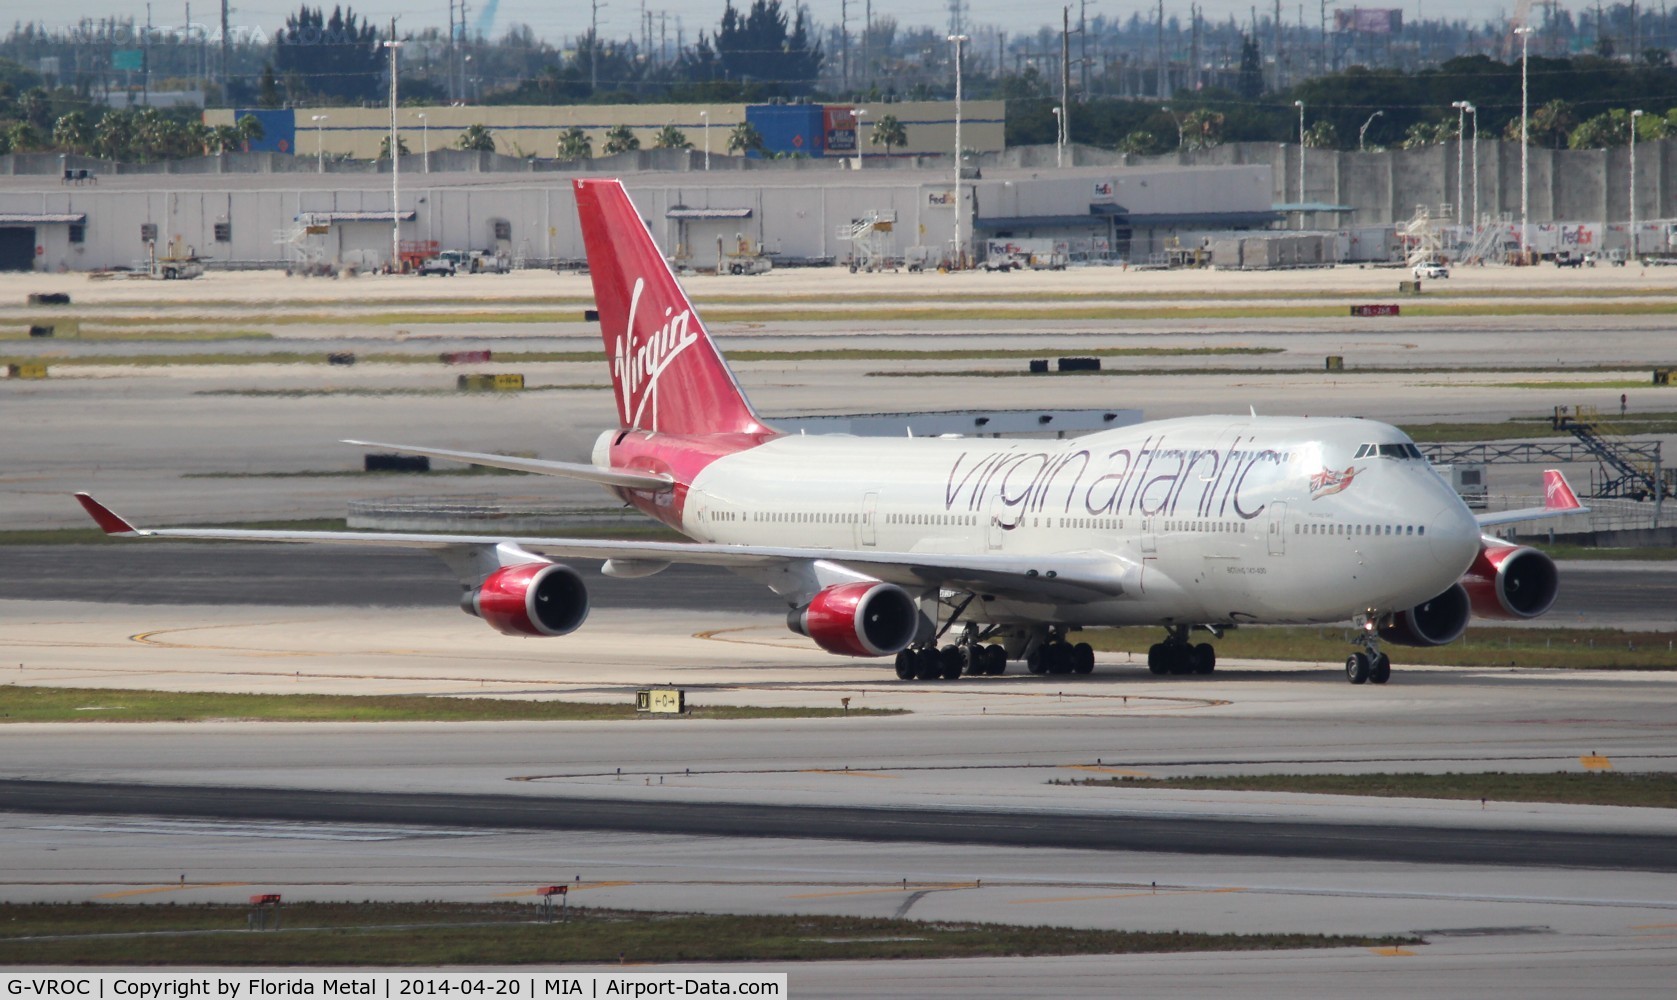 G-VROC, 2003 Boeing 747-41R C/N 32746, Virgin Atlantic